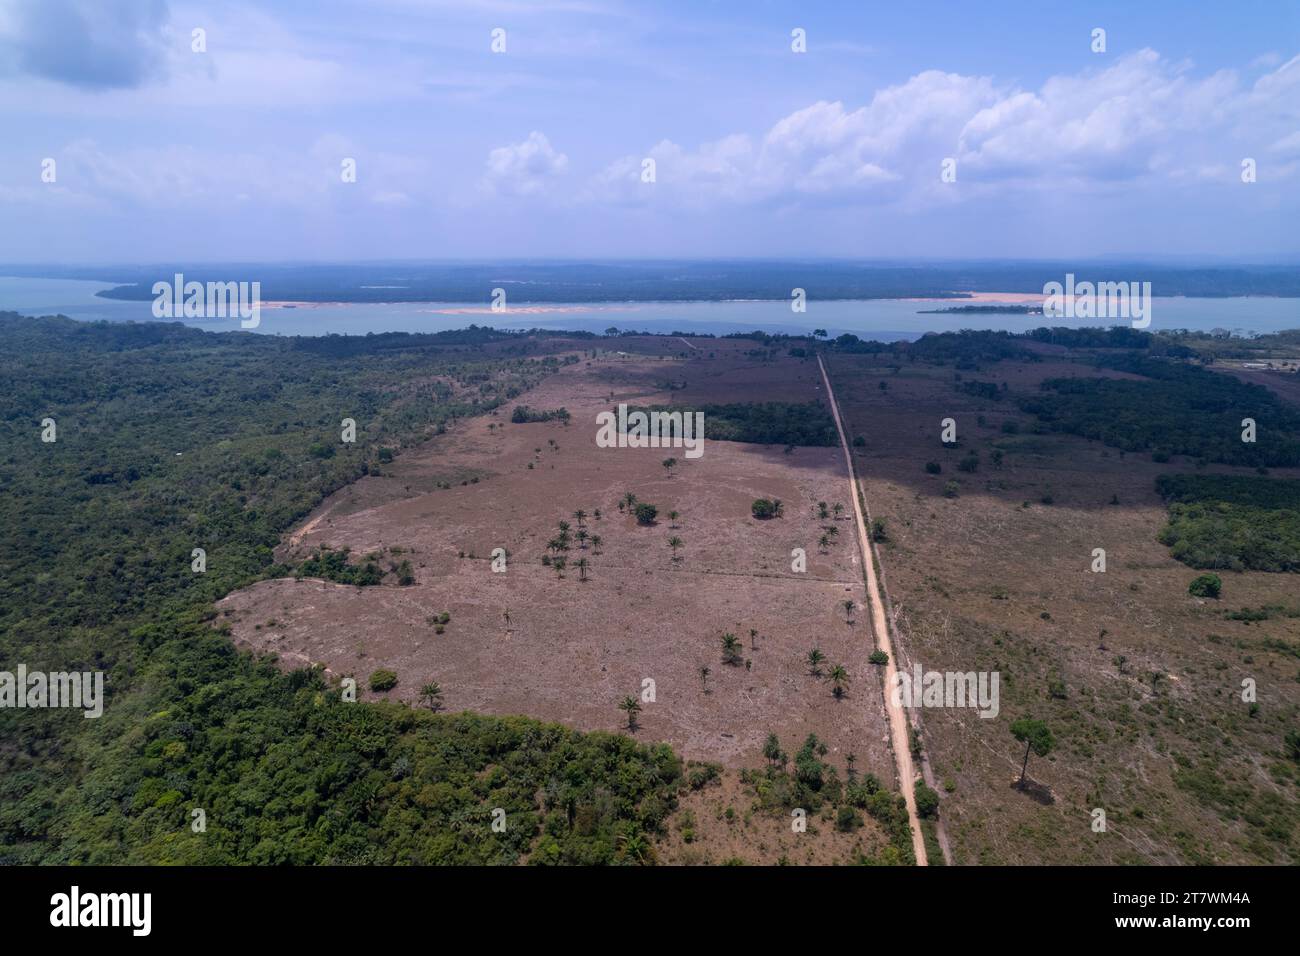 Vista aérea de deforestación de la selva amazónica para abrir tierras para pastos ganaderos, carretera Transamazónica, Para, Brasil. Medio ambiente, ecología, conservación. Foto de stock